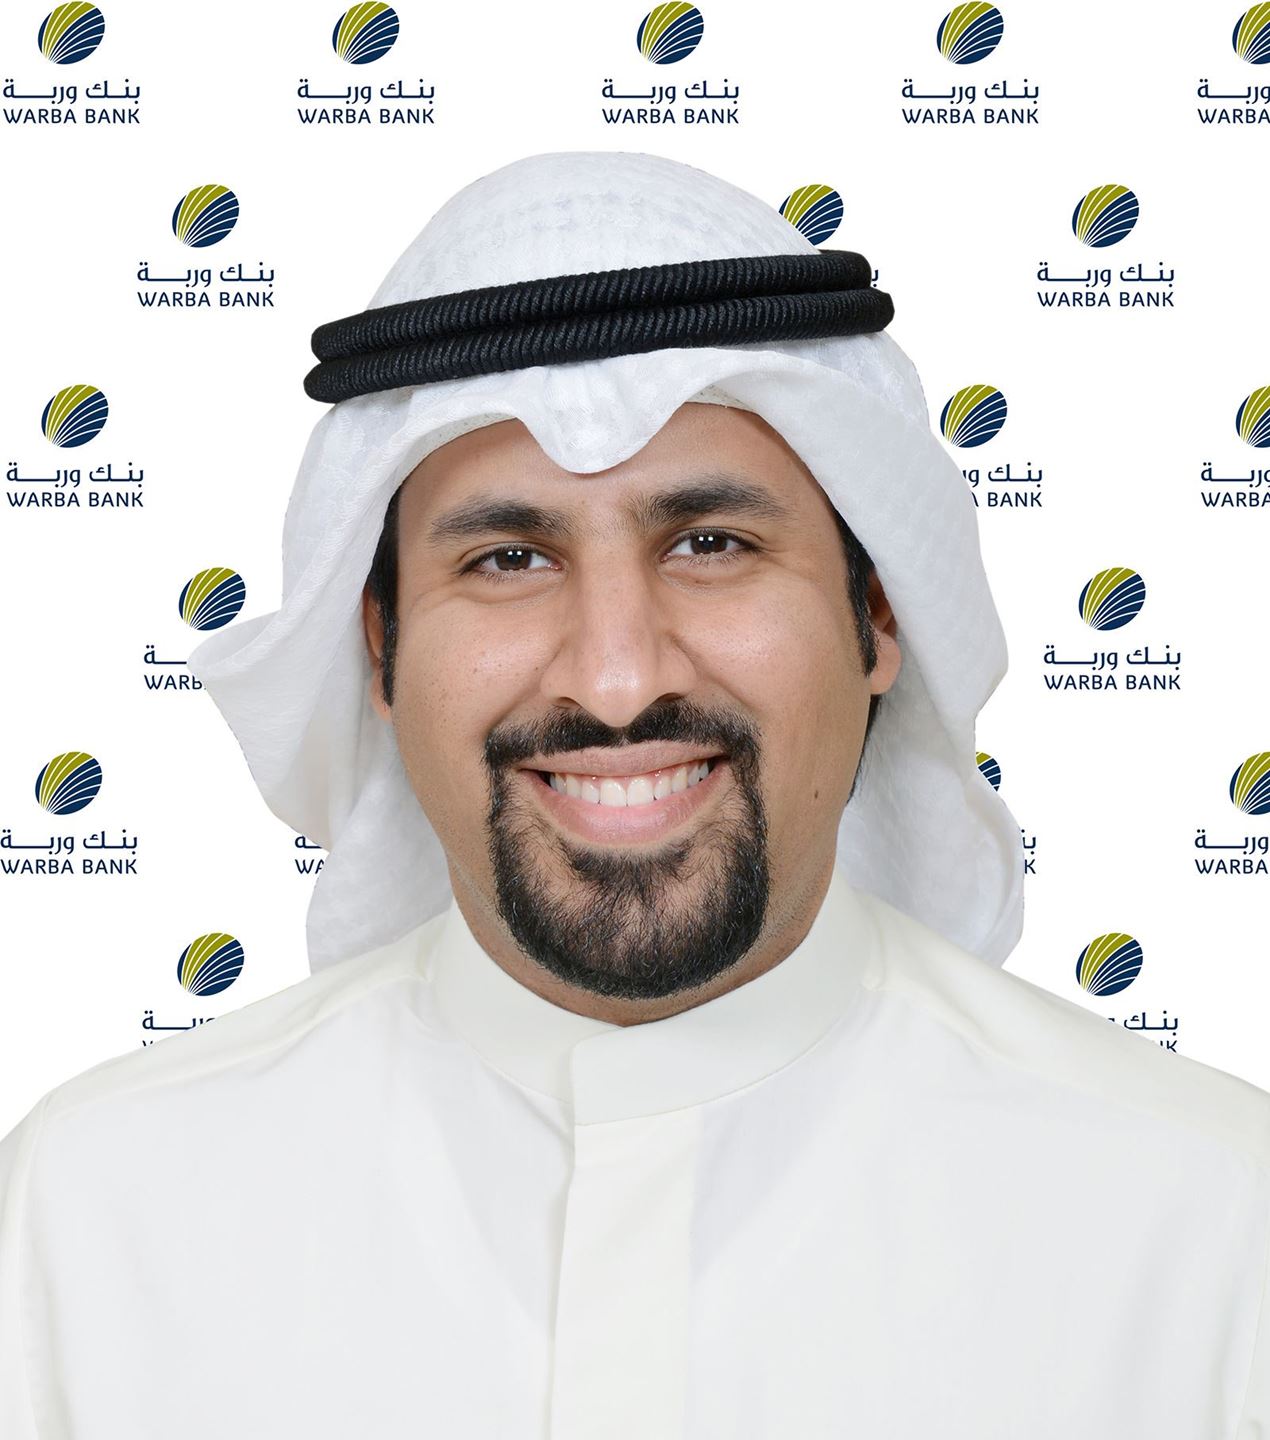 السيّد عبدالله جاسم حمادة – مدير أول قطاع الموارد البشرية في بنك وربة